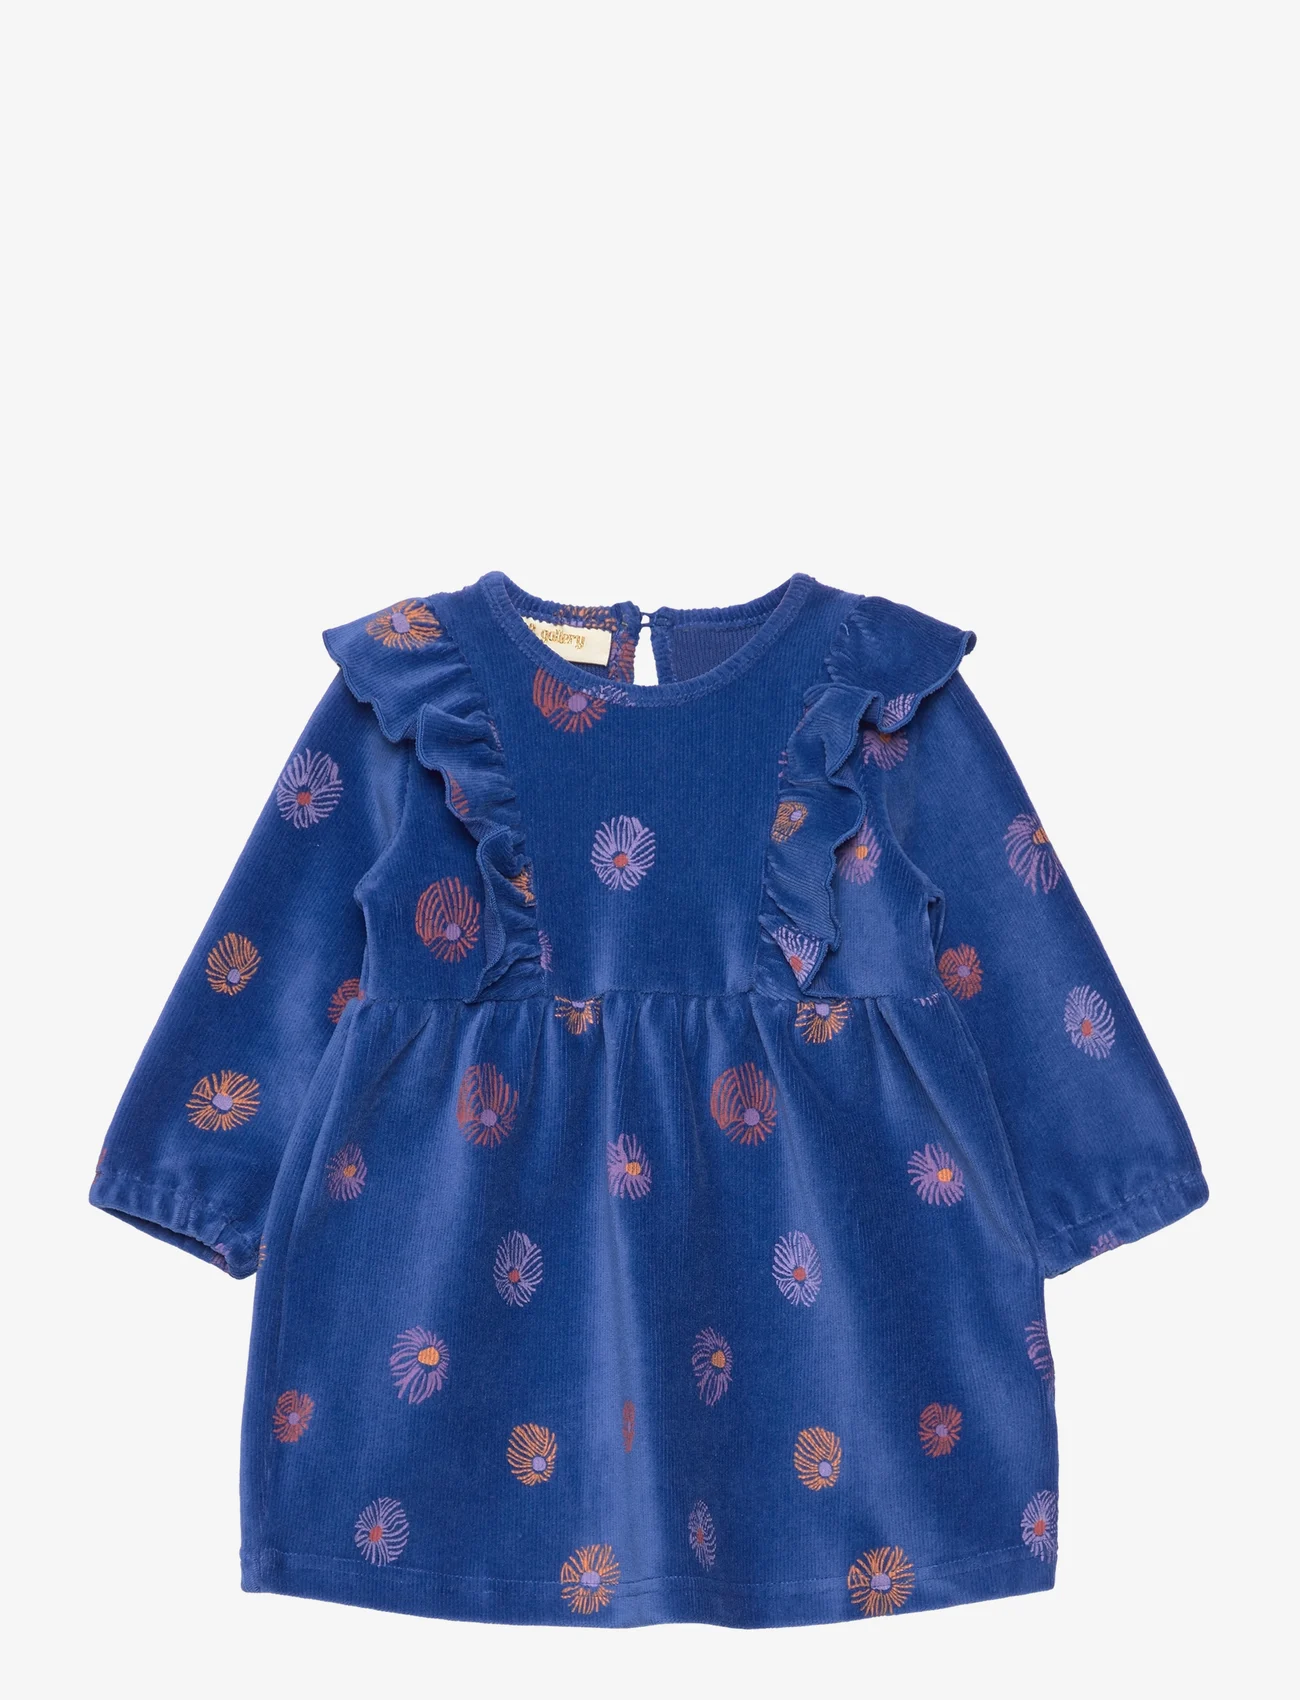 Soft Gallery - SGBELEANOR VELVET FLOWER DRESS - sukienki dla dziewczynek z długim rękawem - true blue - 0